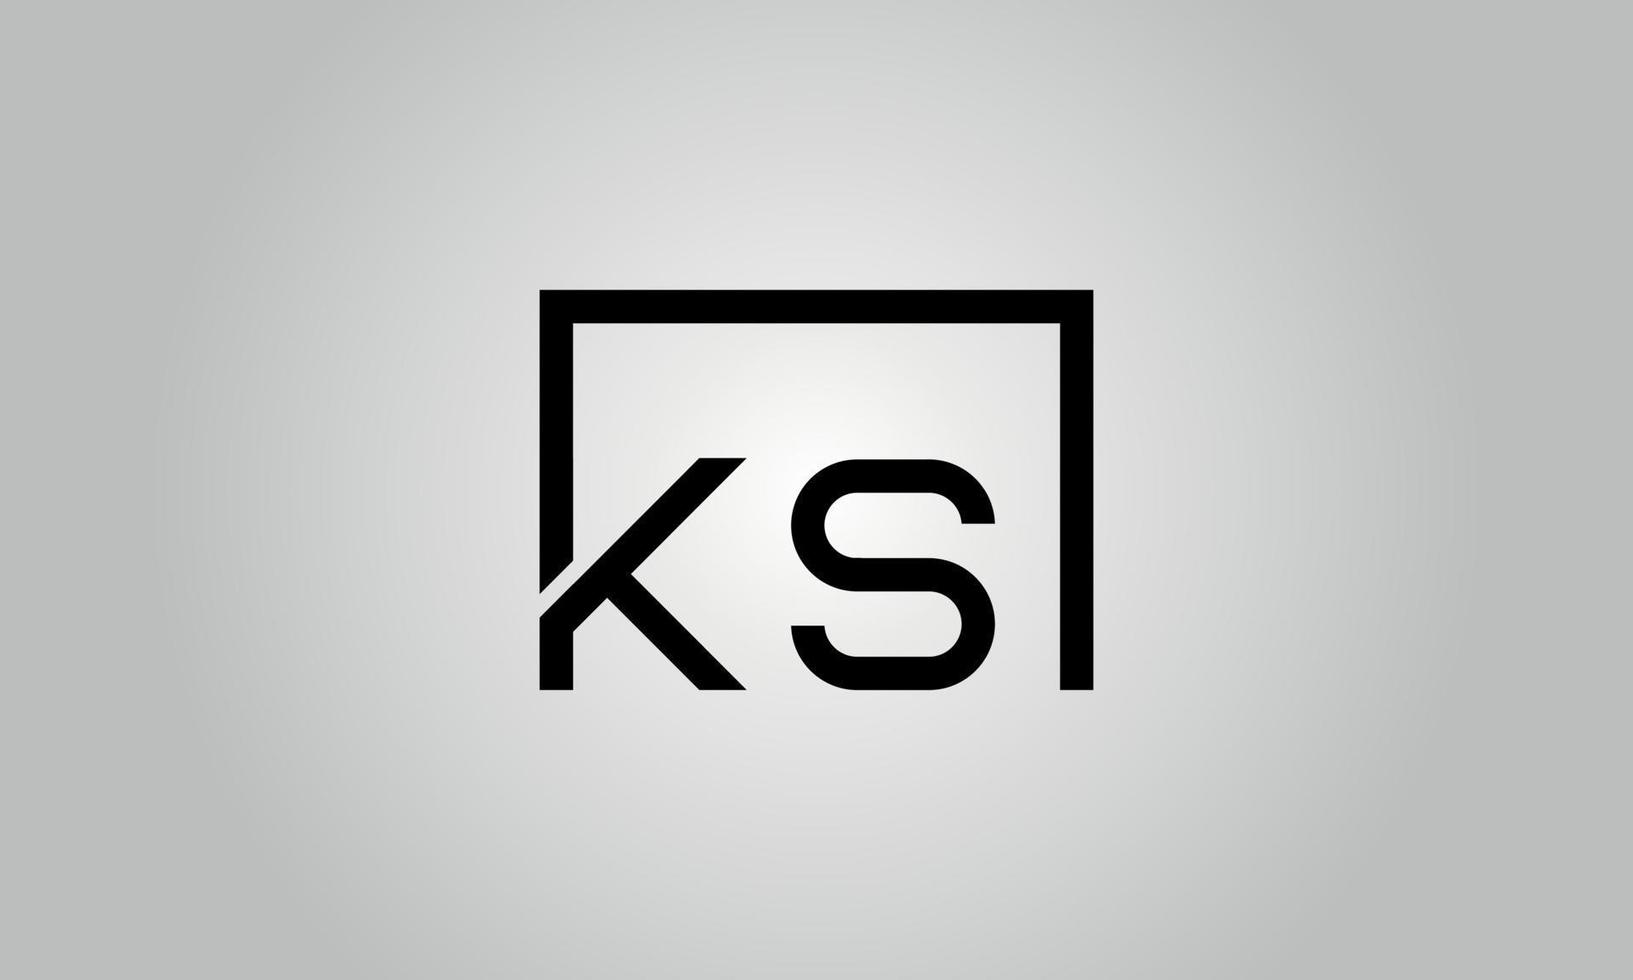 création de logo lettre ks. logo ks avec forme carrée dans le modèle de vecteur gratuit de vecteur de couleurs noires.